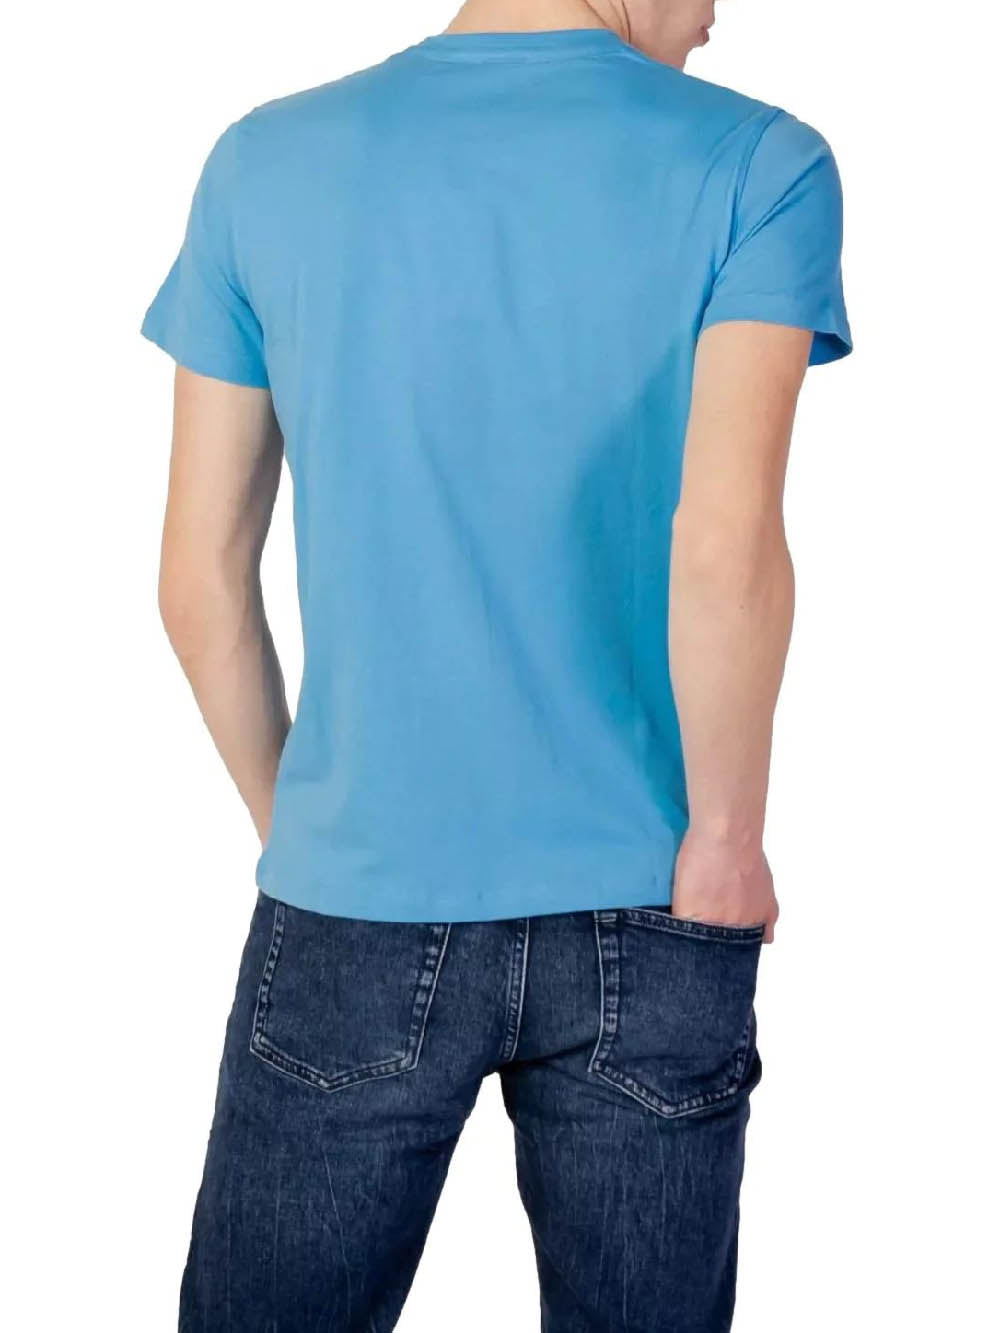 U.S. Polo Assn. T-shirt Uomo 65060 49351 Azzurro